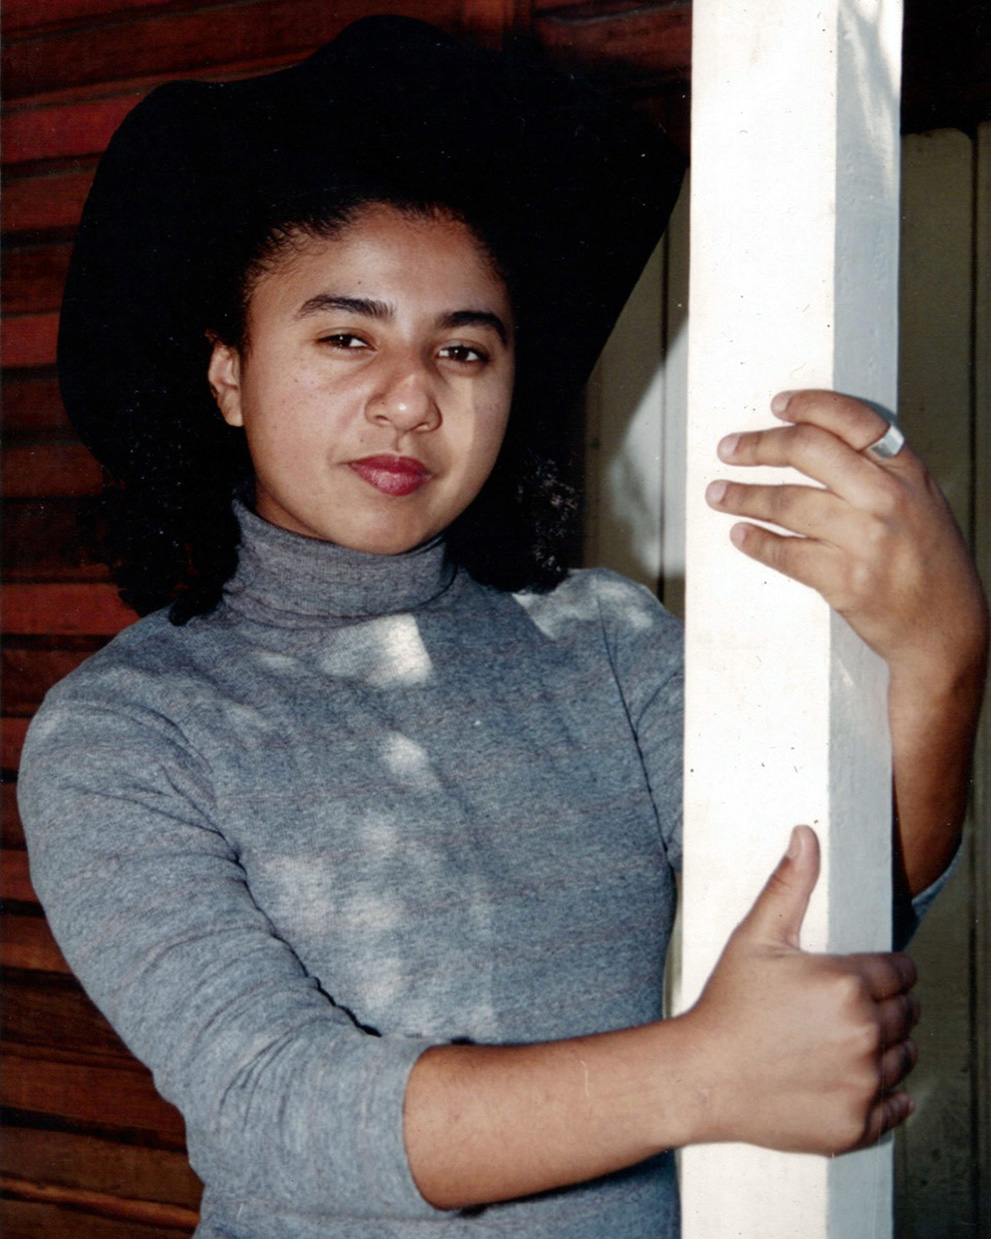 Adriana posa olhando séria para a câmera e abraçando um pilar branco. Ela usa batom, um chapéu de caubói preto e uma blusa cinza de mangas compridas.